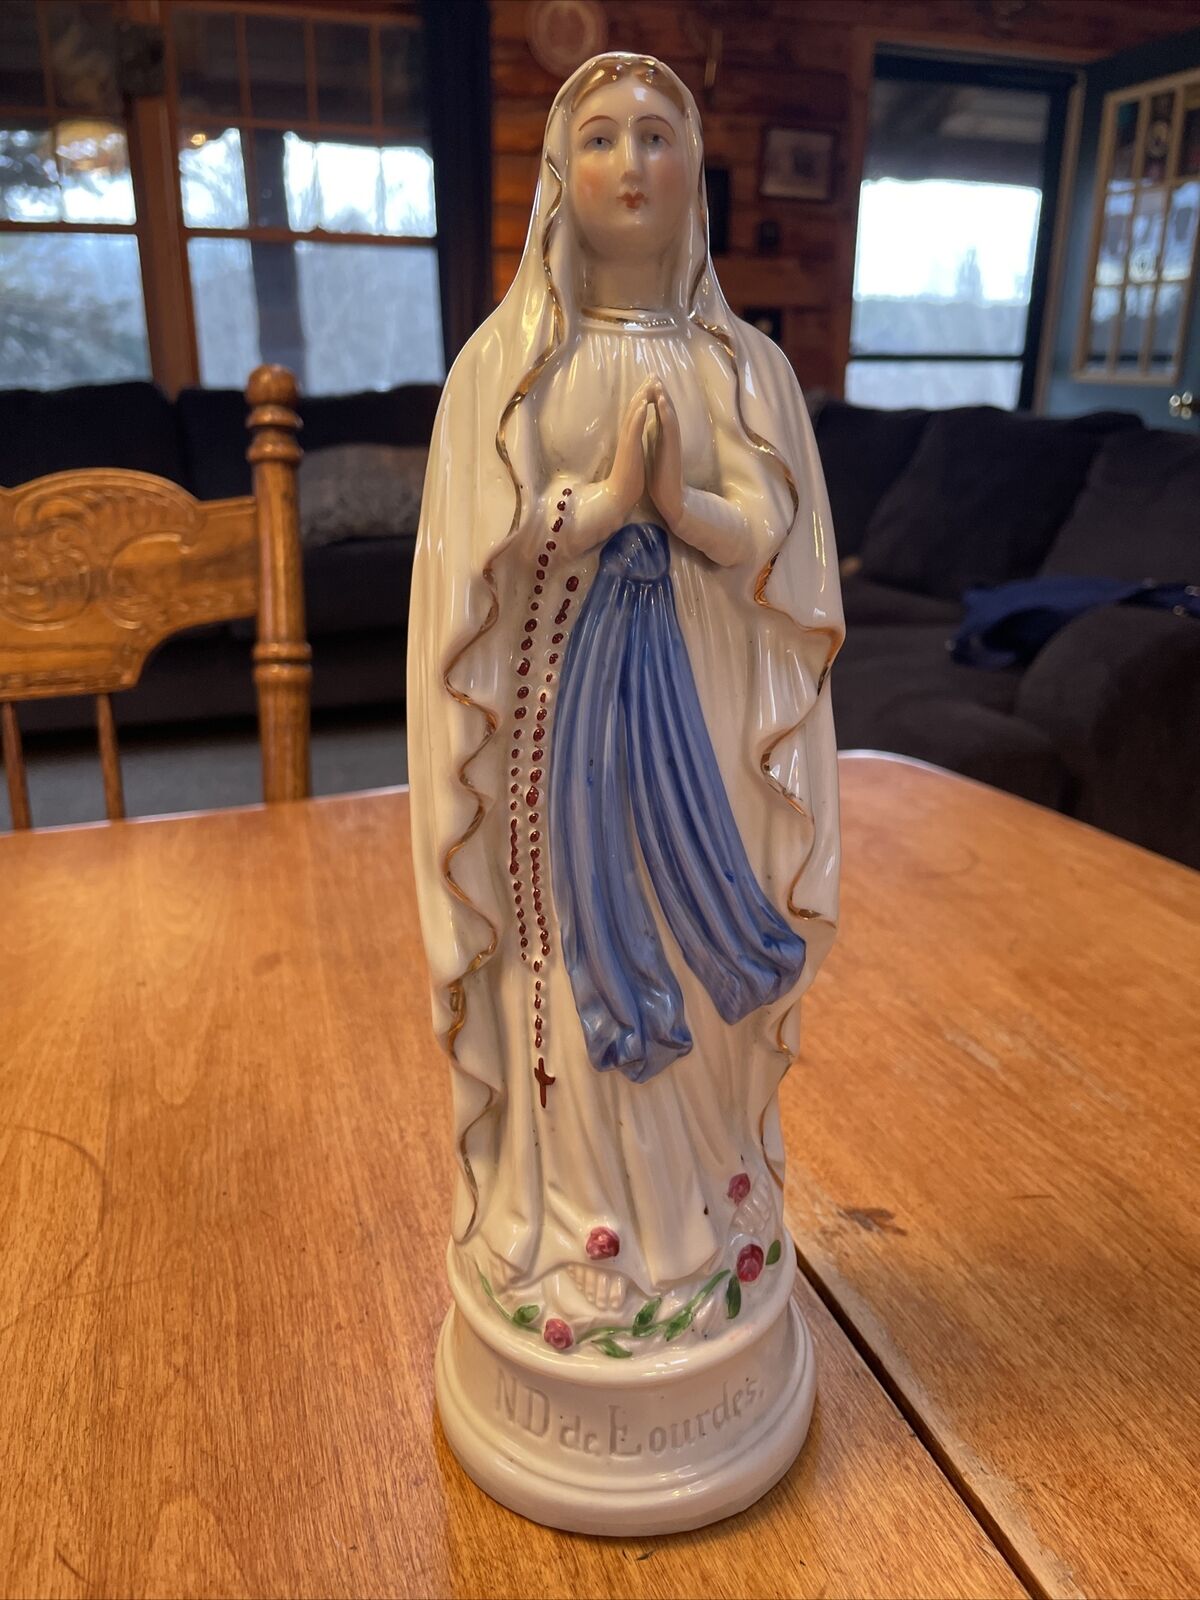 Vintage 13 Inch ND De Lourdes Porcelain Statue #251 Virgin Mary